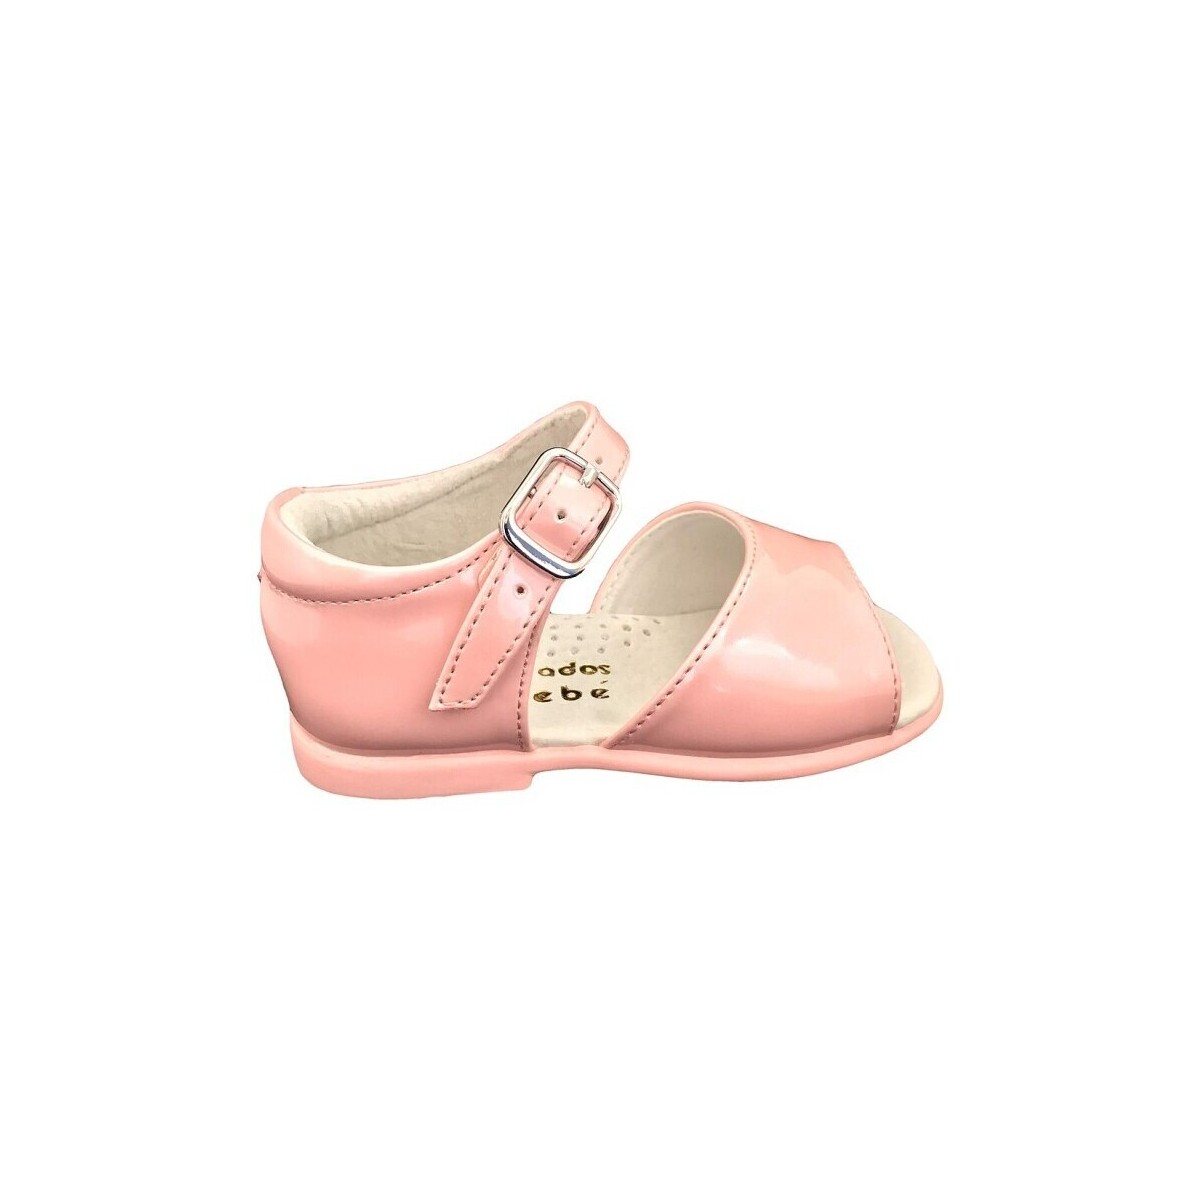 kengät Sandaalit ja avokkaat D'bébé 24522-18 Vaaleanpunainen